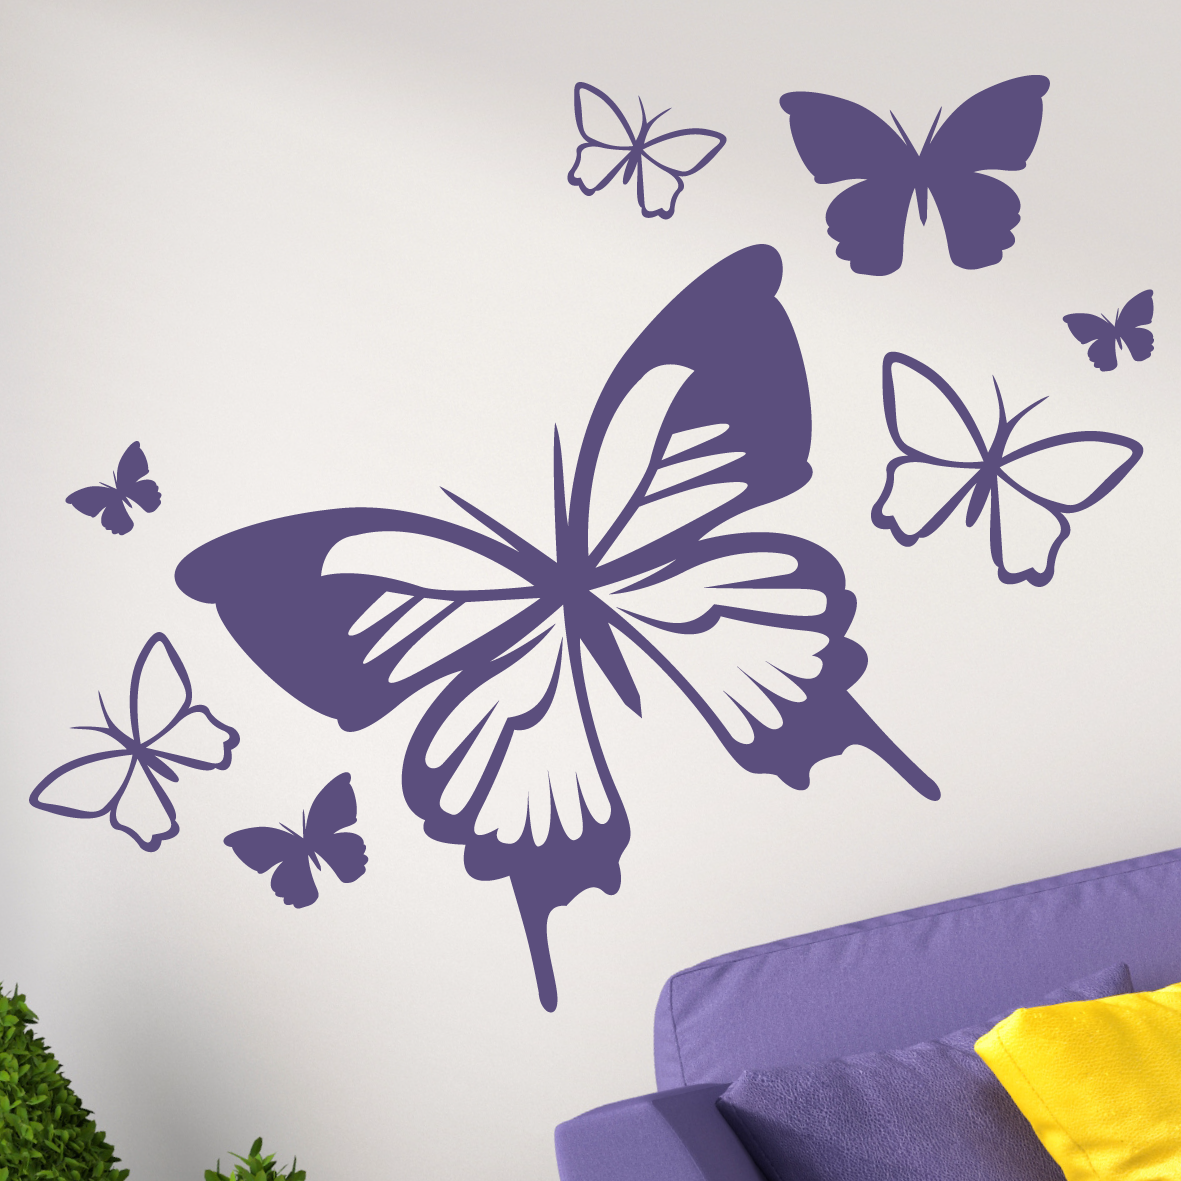 Butterflies Wall Decal